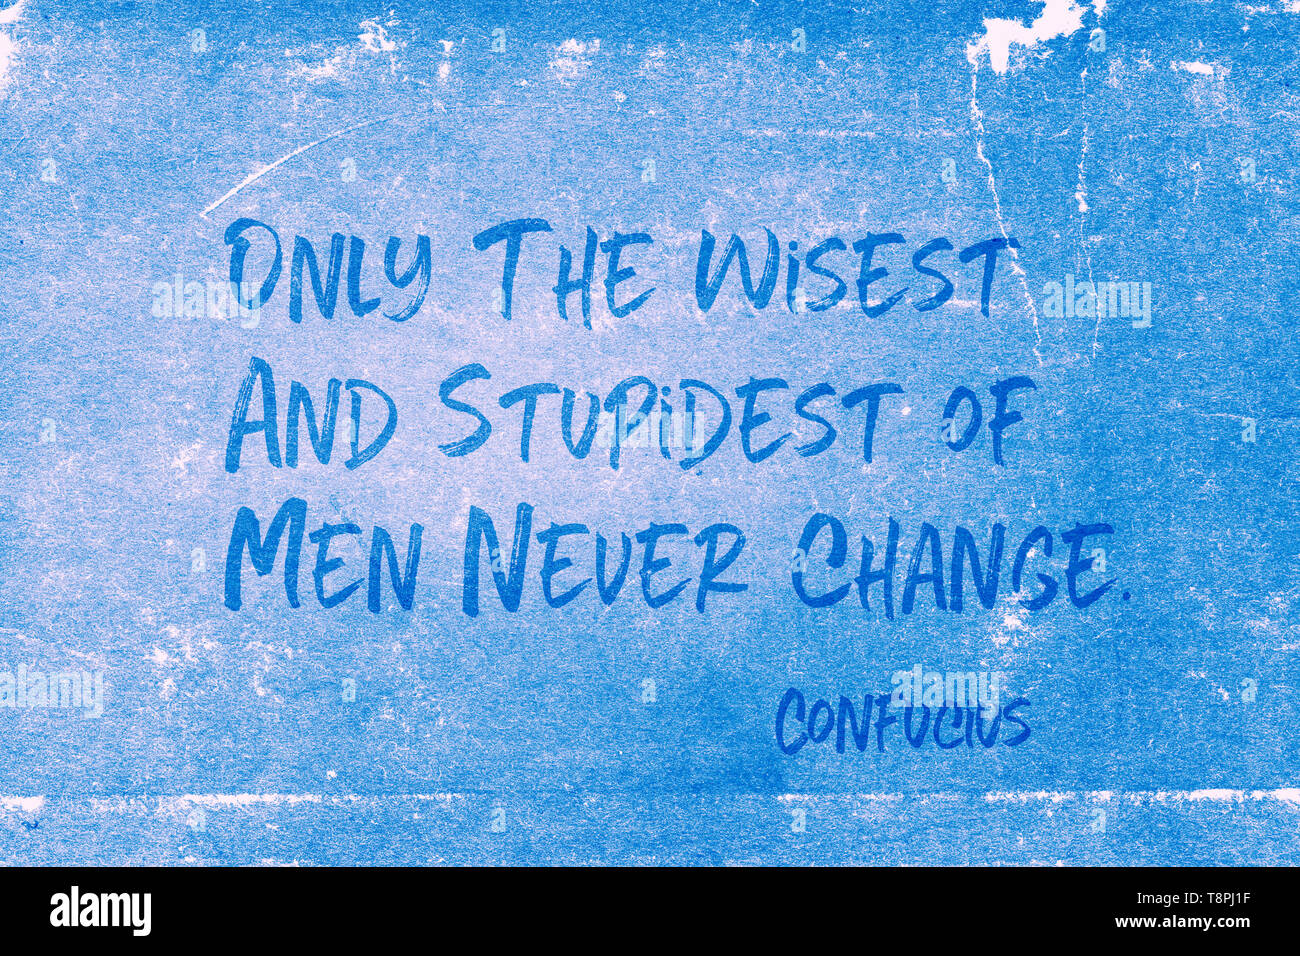 Solo i più saggi e più stupida di uomini non cambiano mai - antico filosofo cinese Confucio preventivo stampato su grunge carta blu Foto Stock